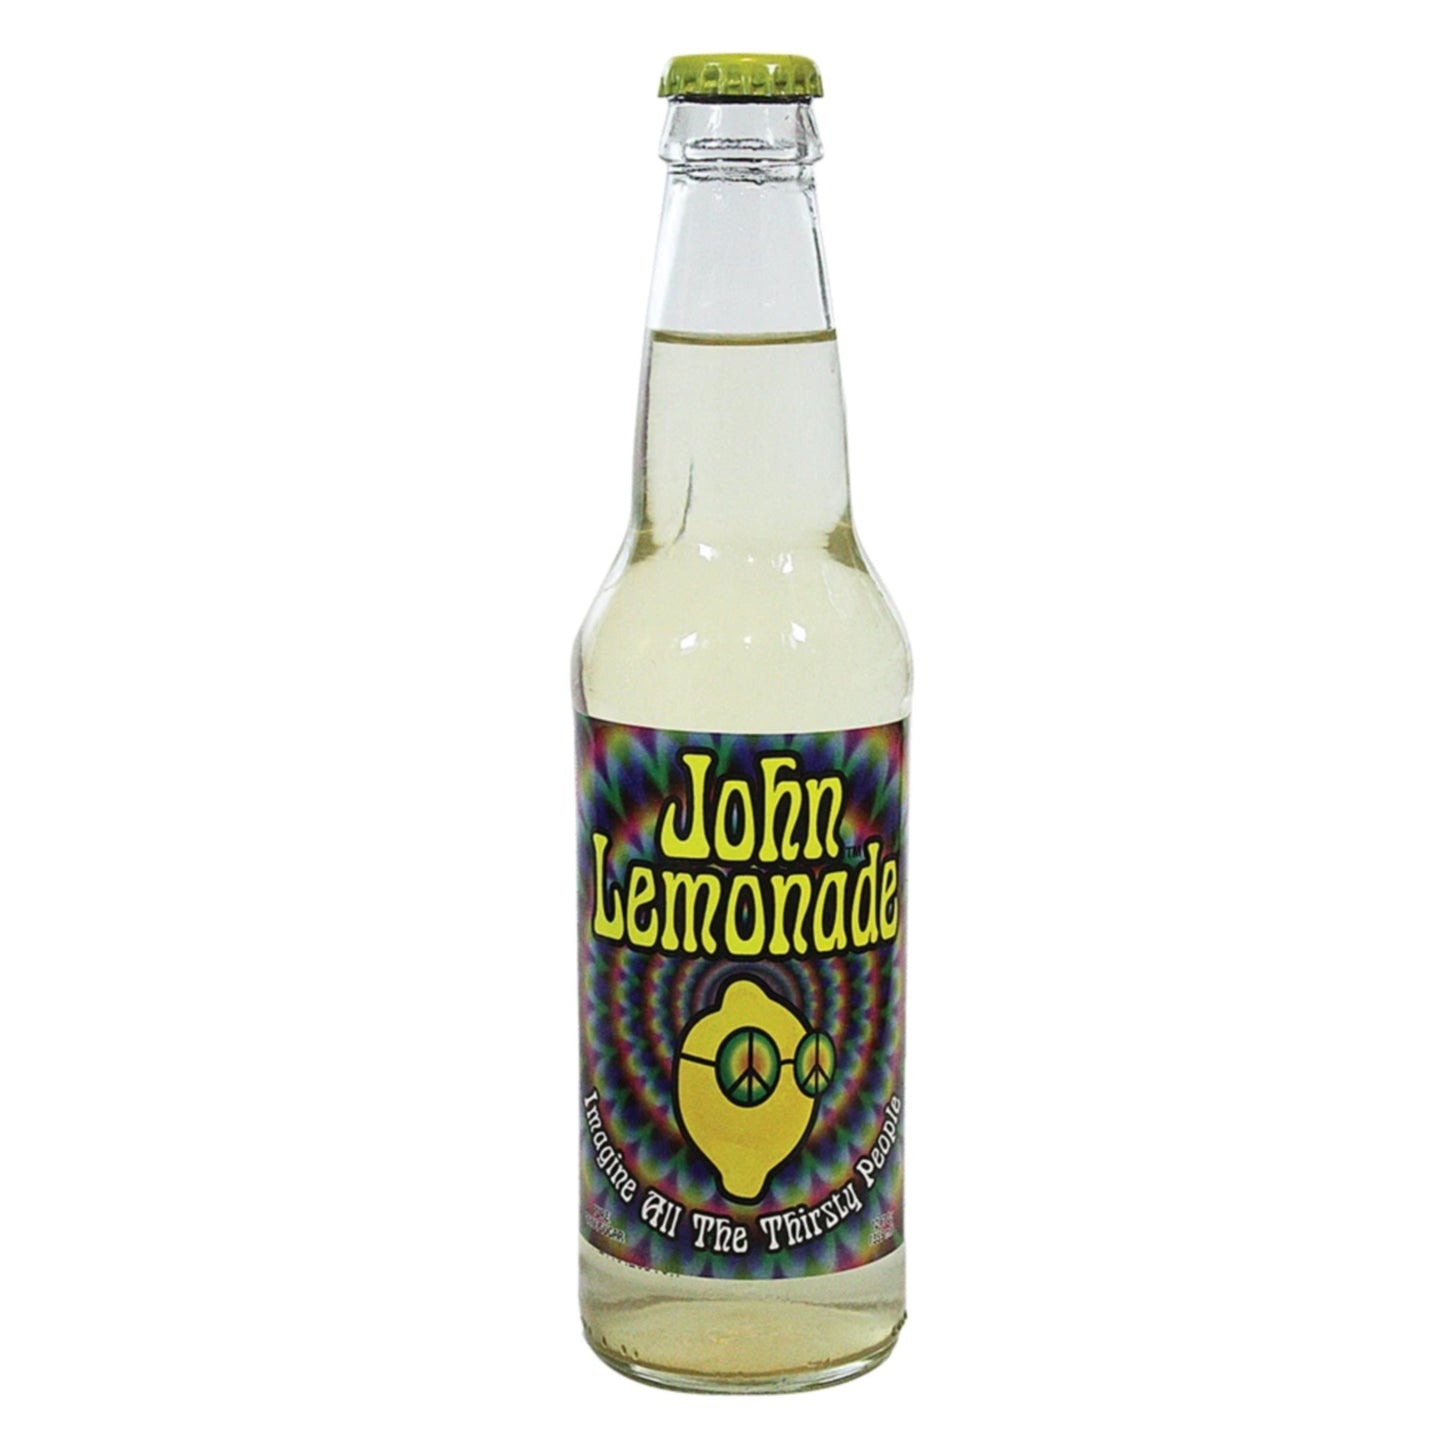 John Lemonade Case